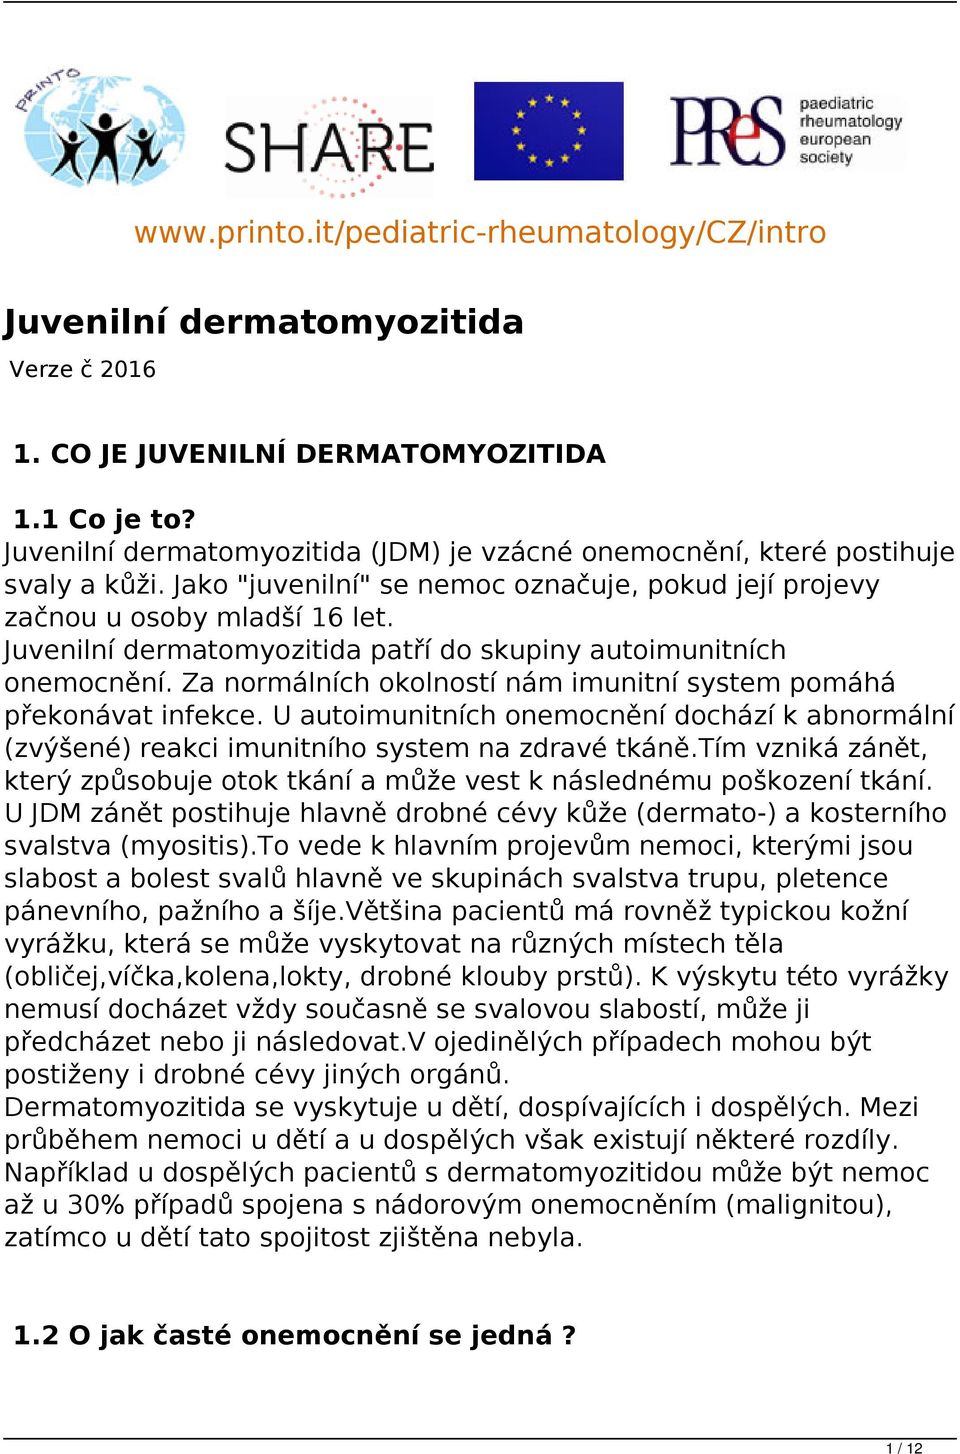 Juvenilní dermatomyozitida patří do skupiny autoimunitních onemocnění. Za normálních okolností nám imunitní system pomáhá překonávat infekce.